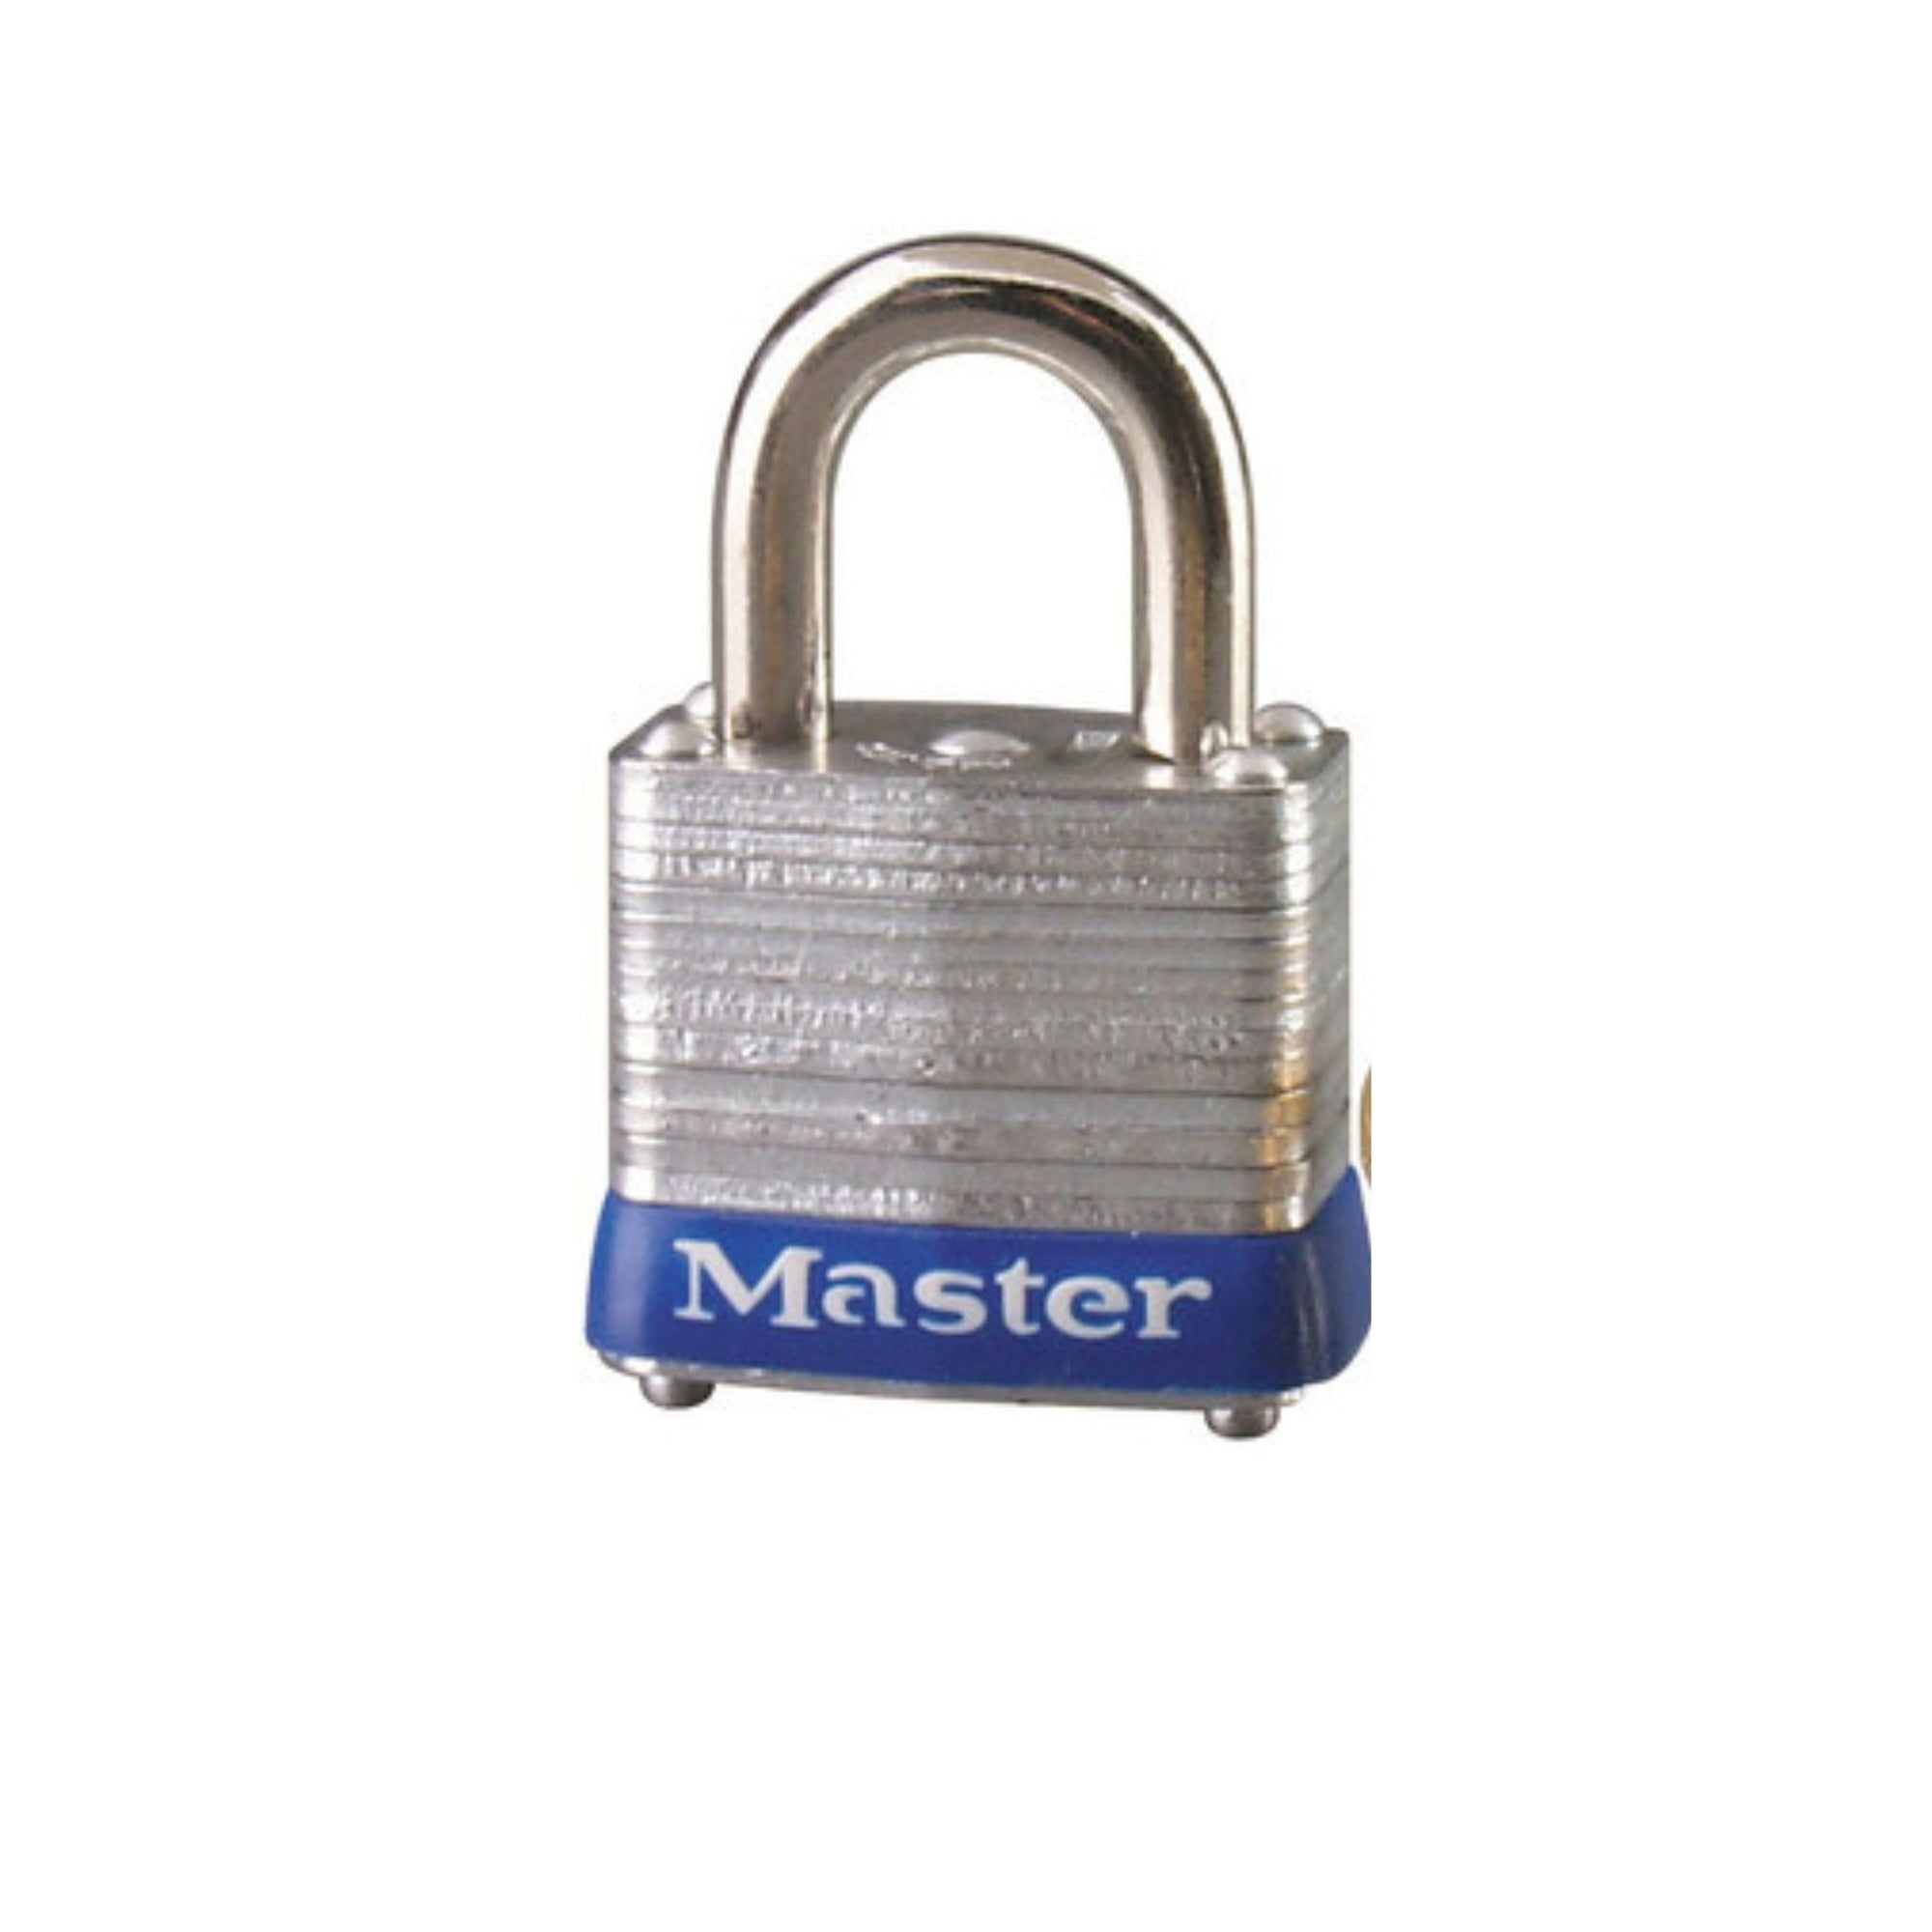 Master Lock 7KA P112 Lock Laminated steel No. 7 Series Padlock Keyed to Match Existing Key Number KAP112 - The Lock Source